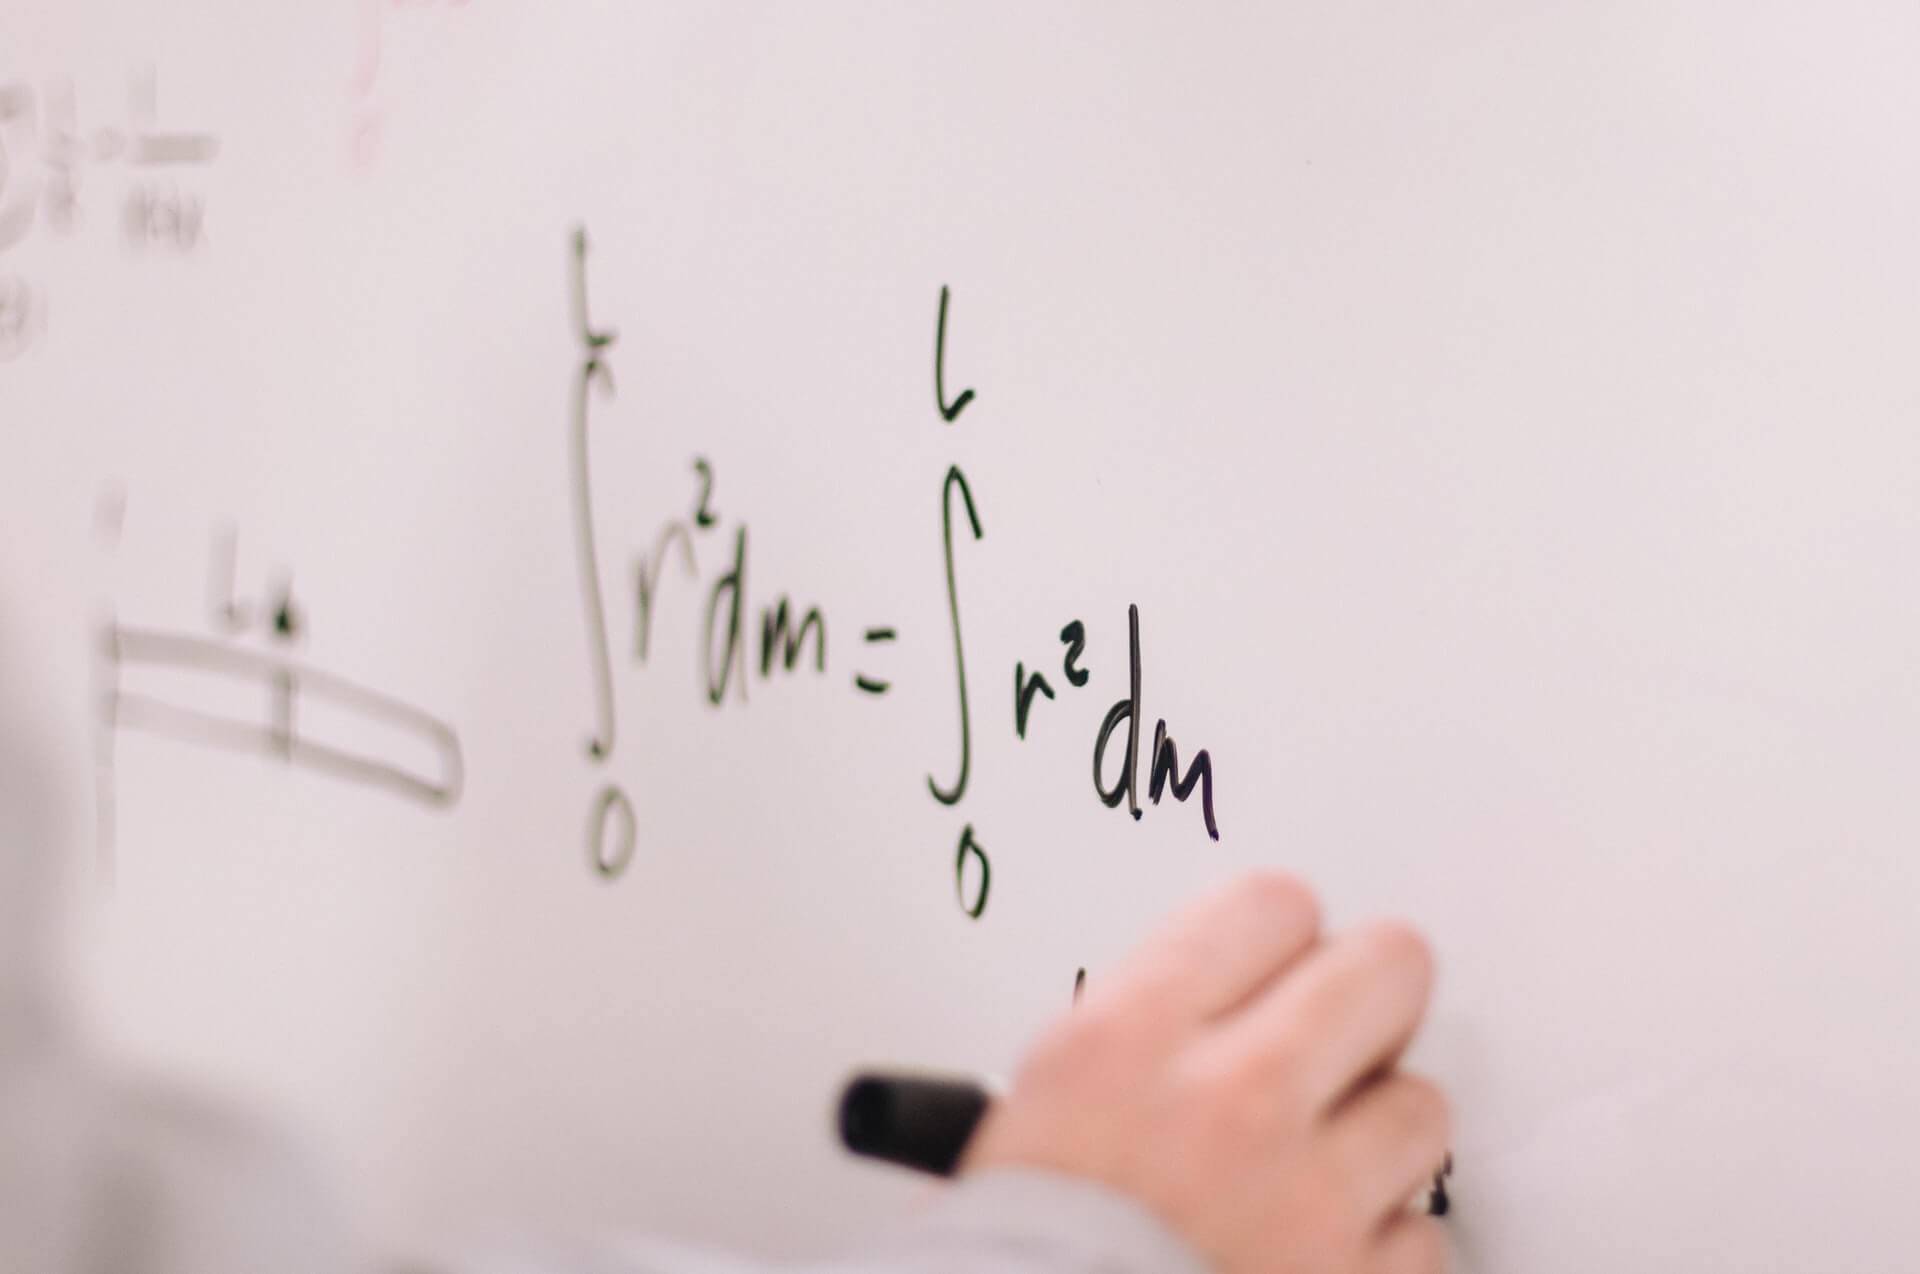 理系数学 明治大学の入試概要と対策方法 解き方のコツとは 公式 アクシブアカデミー 大学受験の1 1個別予備校